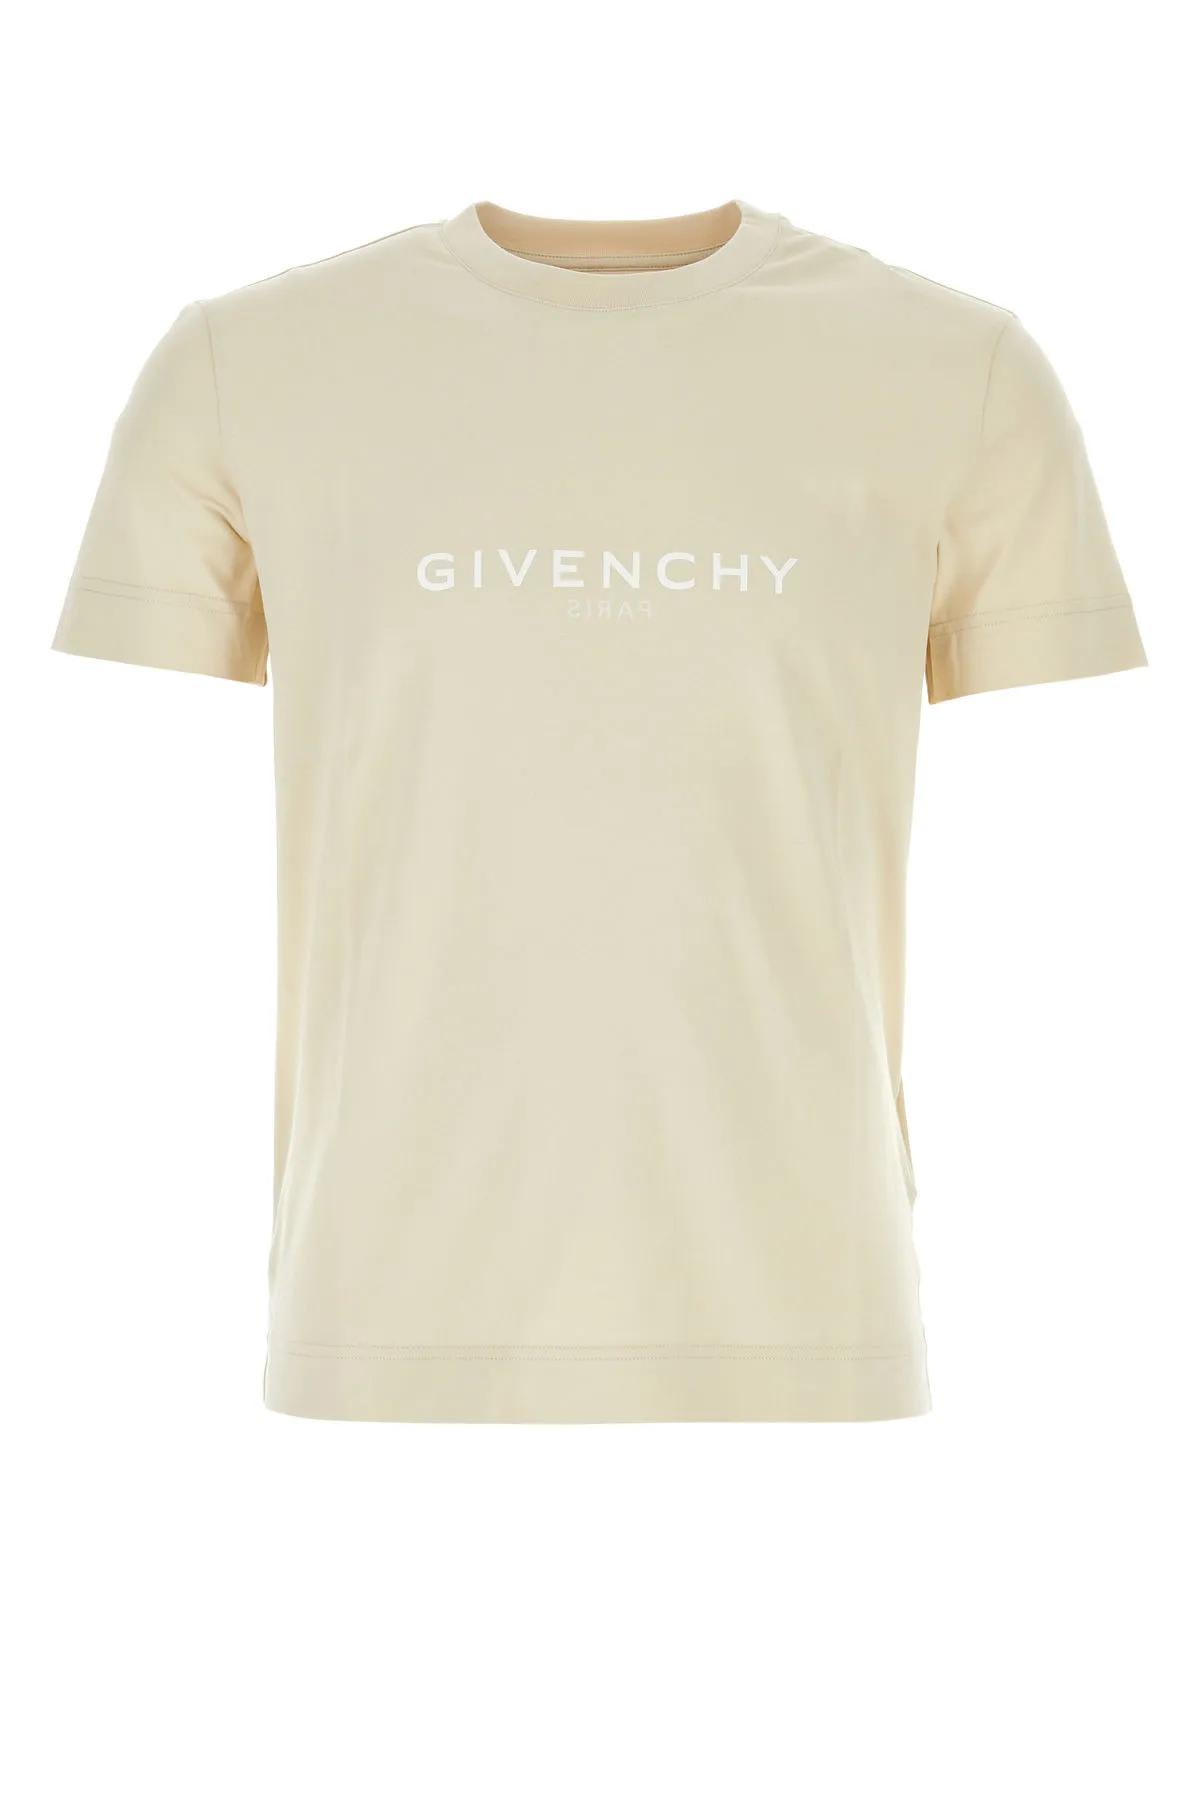 Shop Givenchy Sand Cotton T-shirt